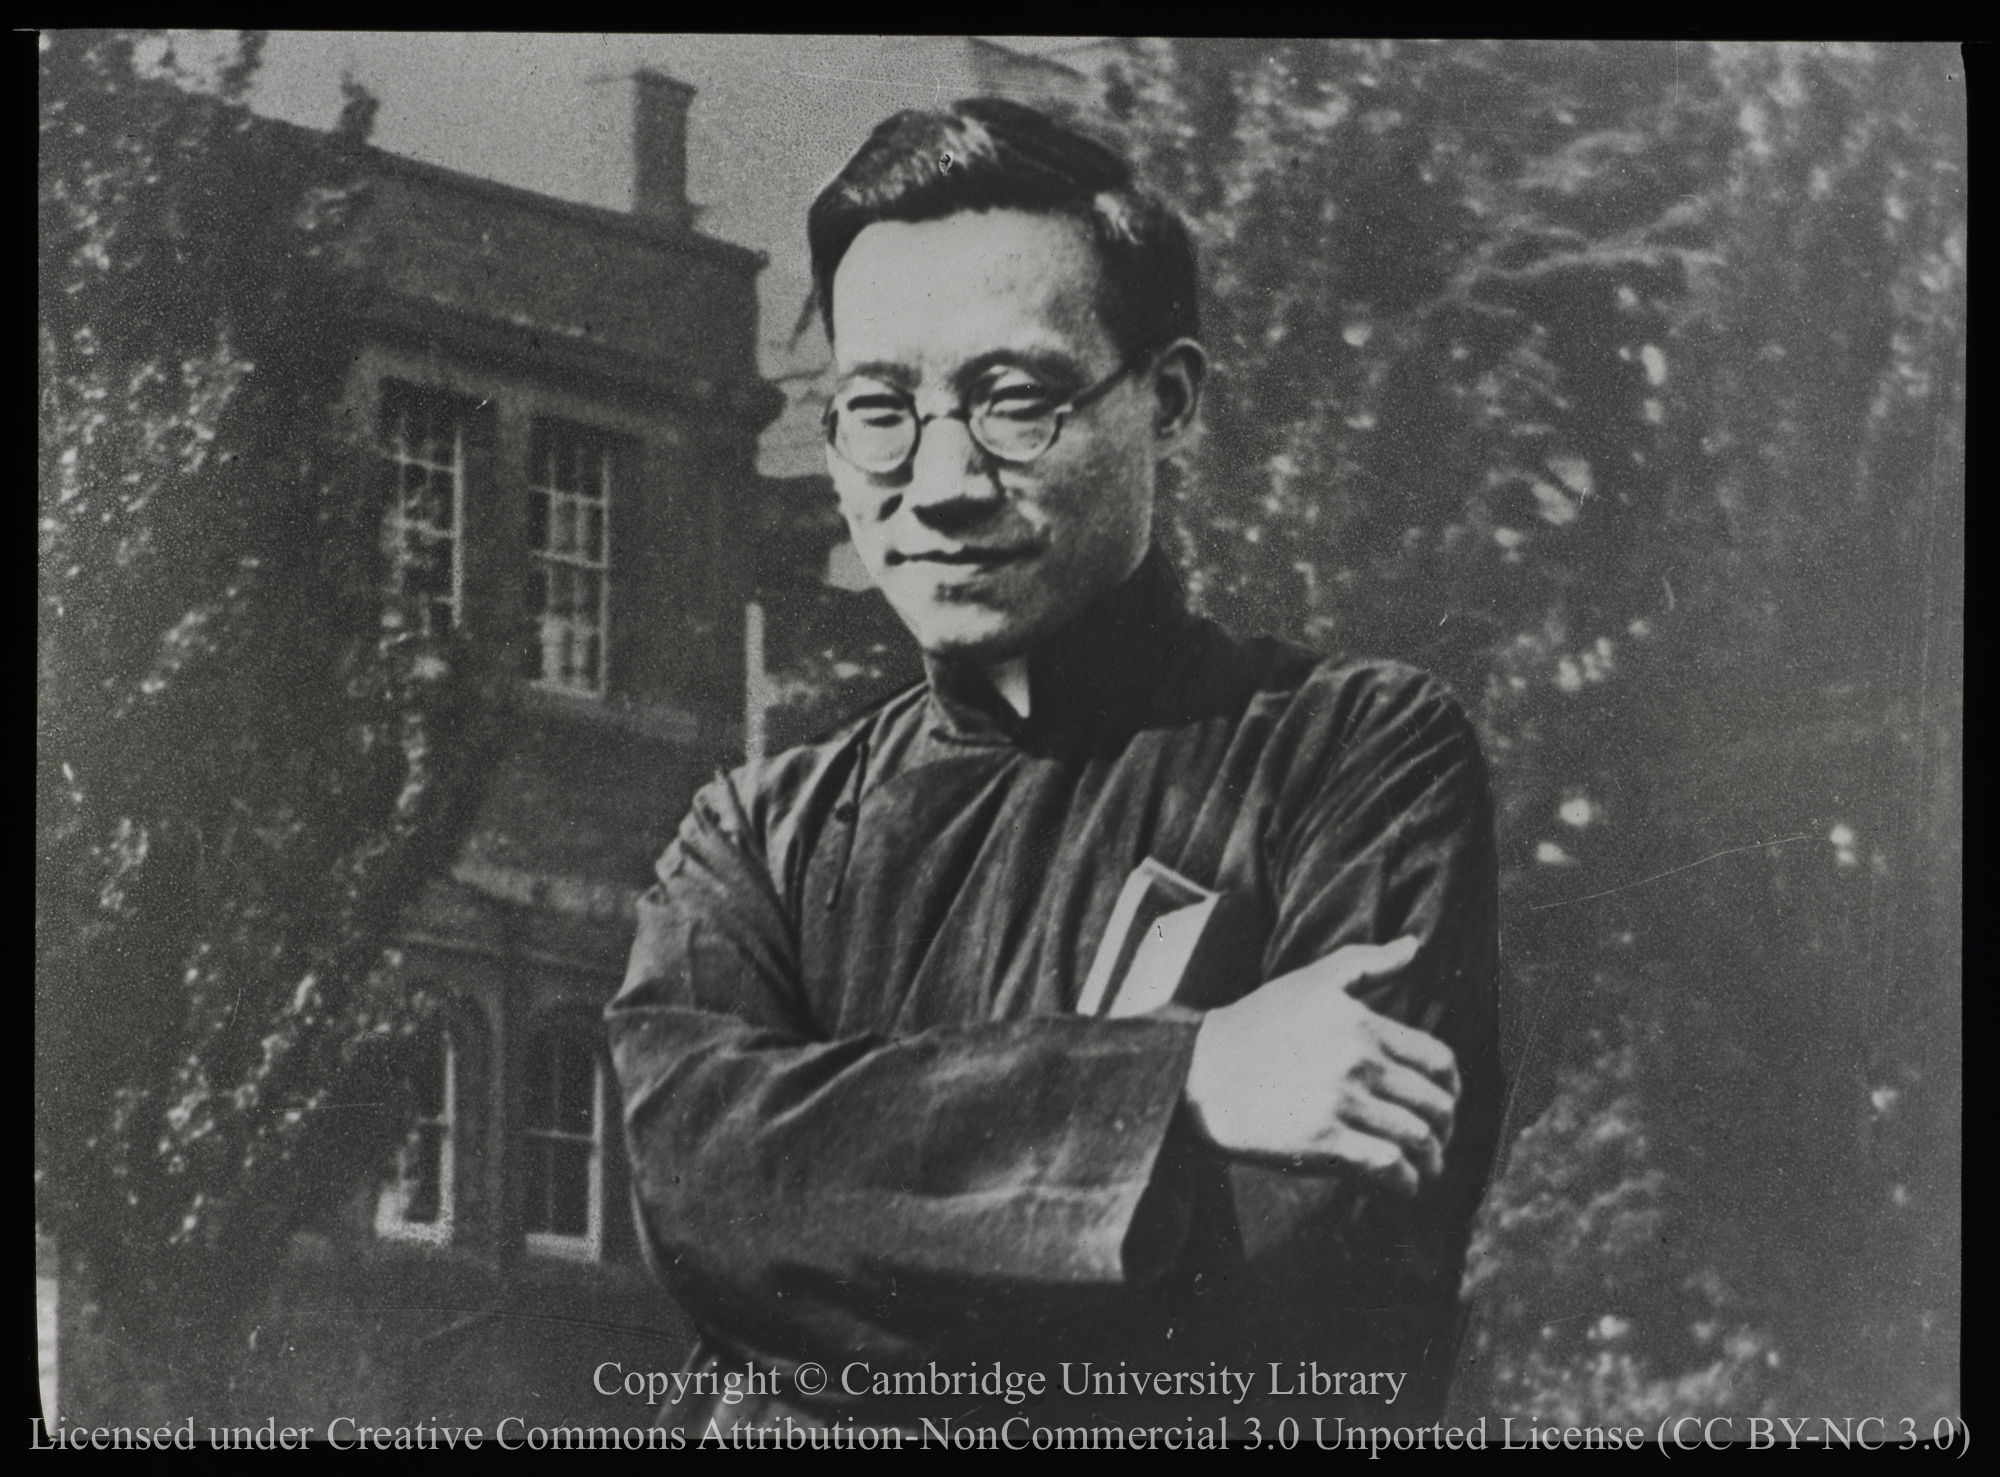 Rt. Rev. K.H. Chang, 1920 - 1935